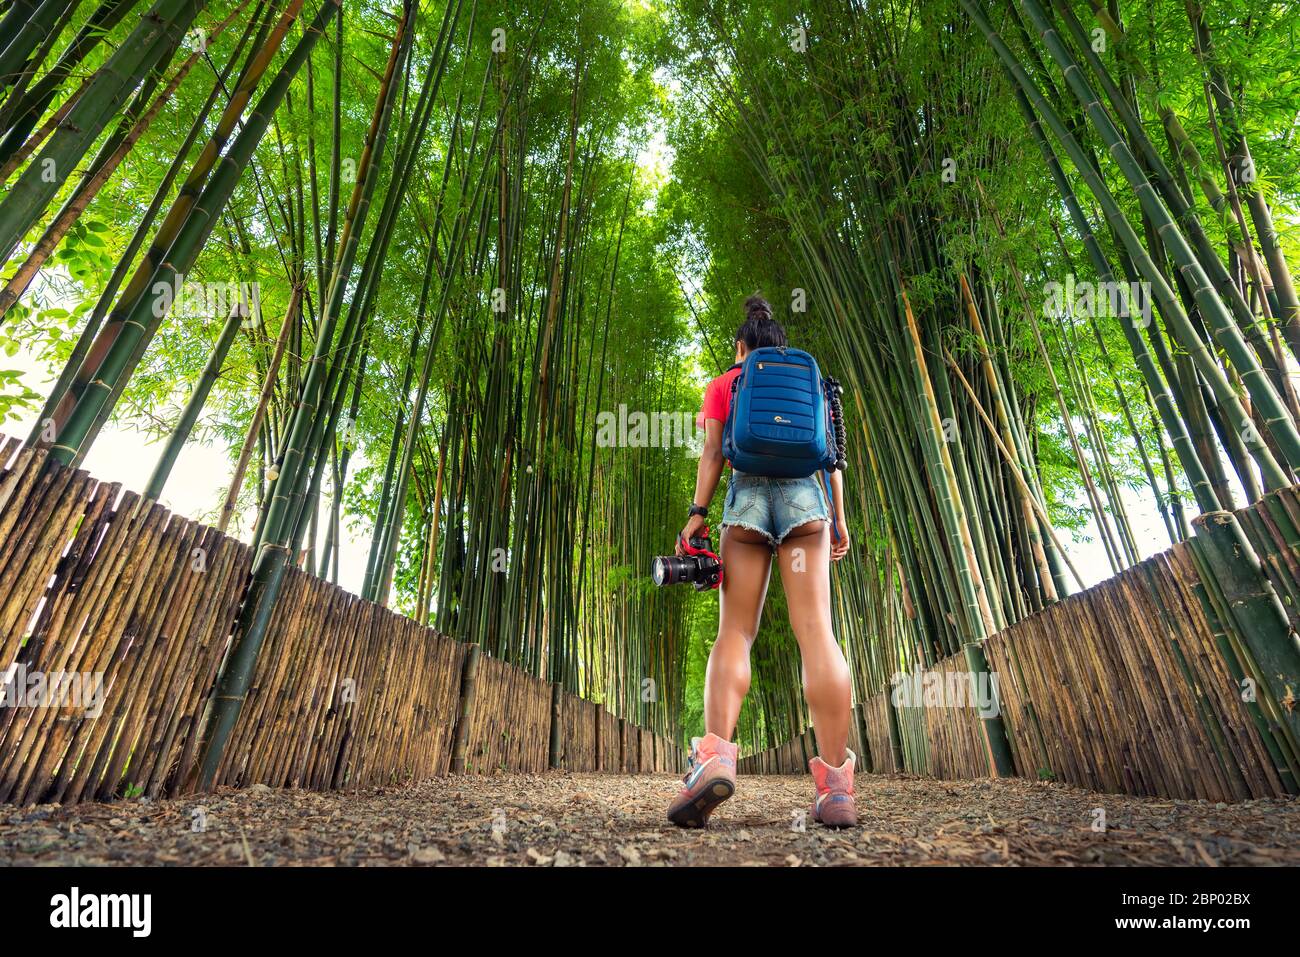 Active Lifestyle travel Frau mit Rucksack und Kamera in der Hand erkunden Bamboo Forest in Thailand. Beliebte Reiseziele in Asien. Stockfoto